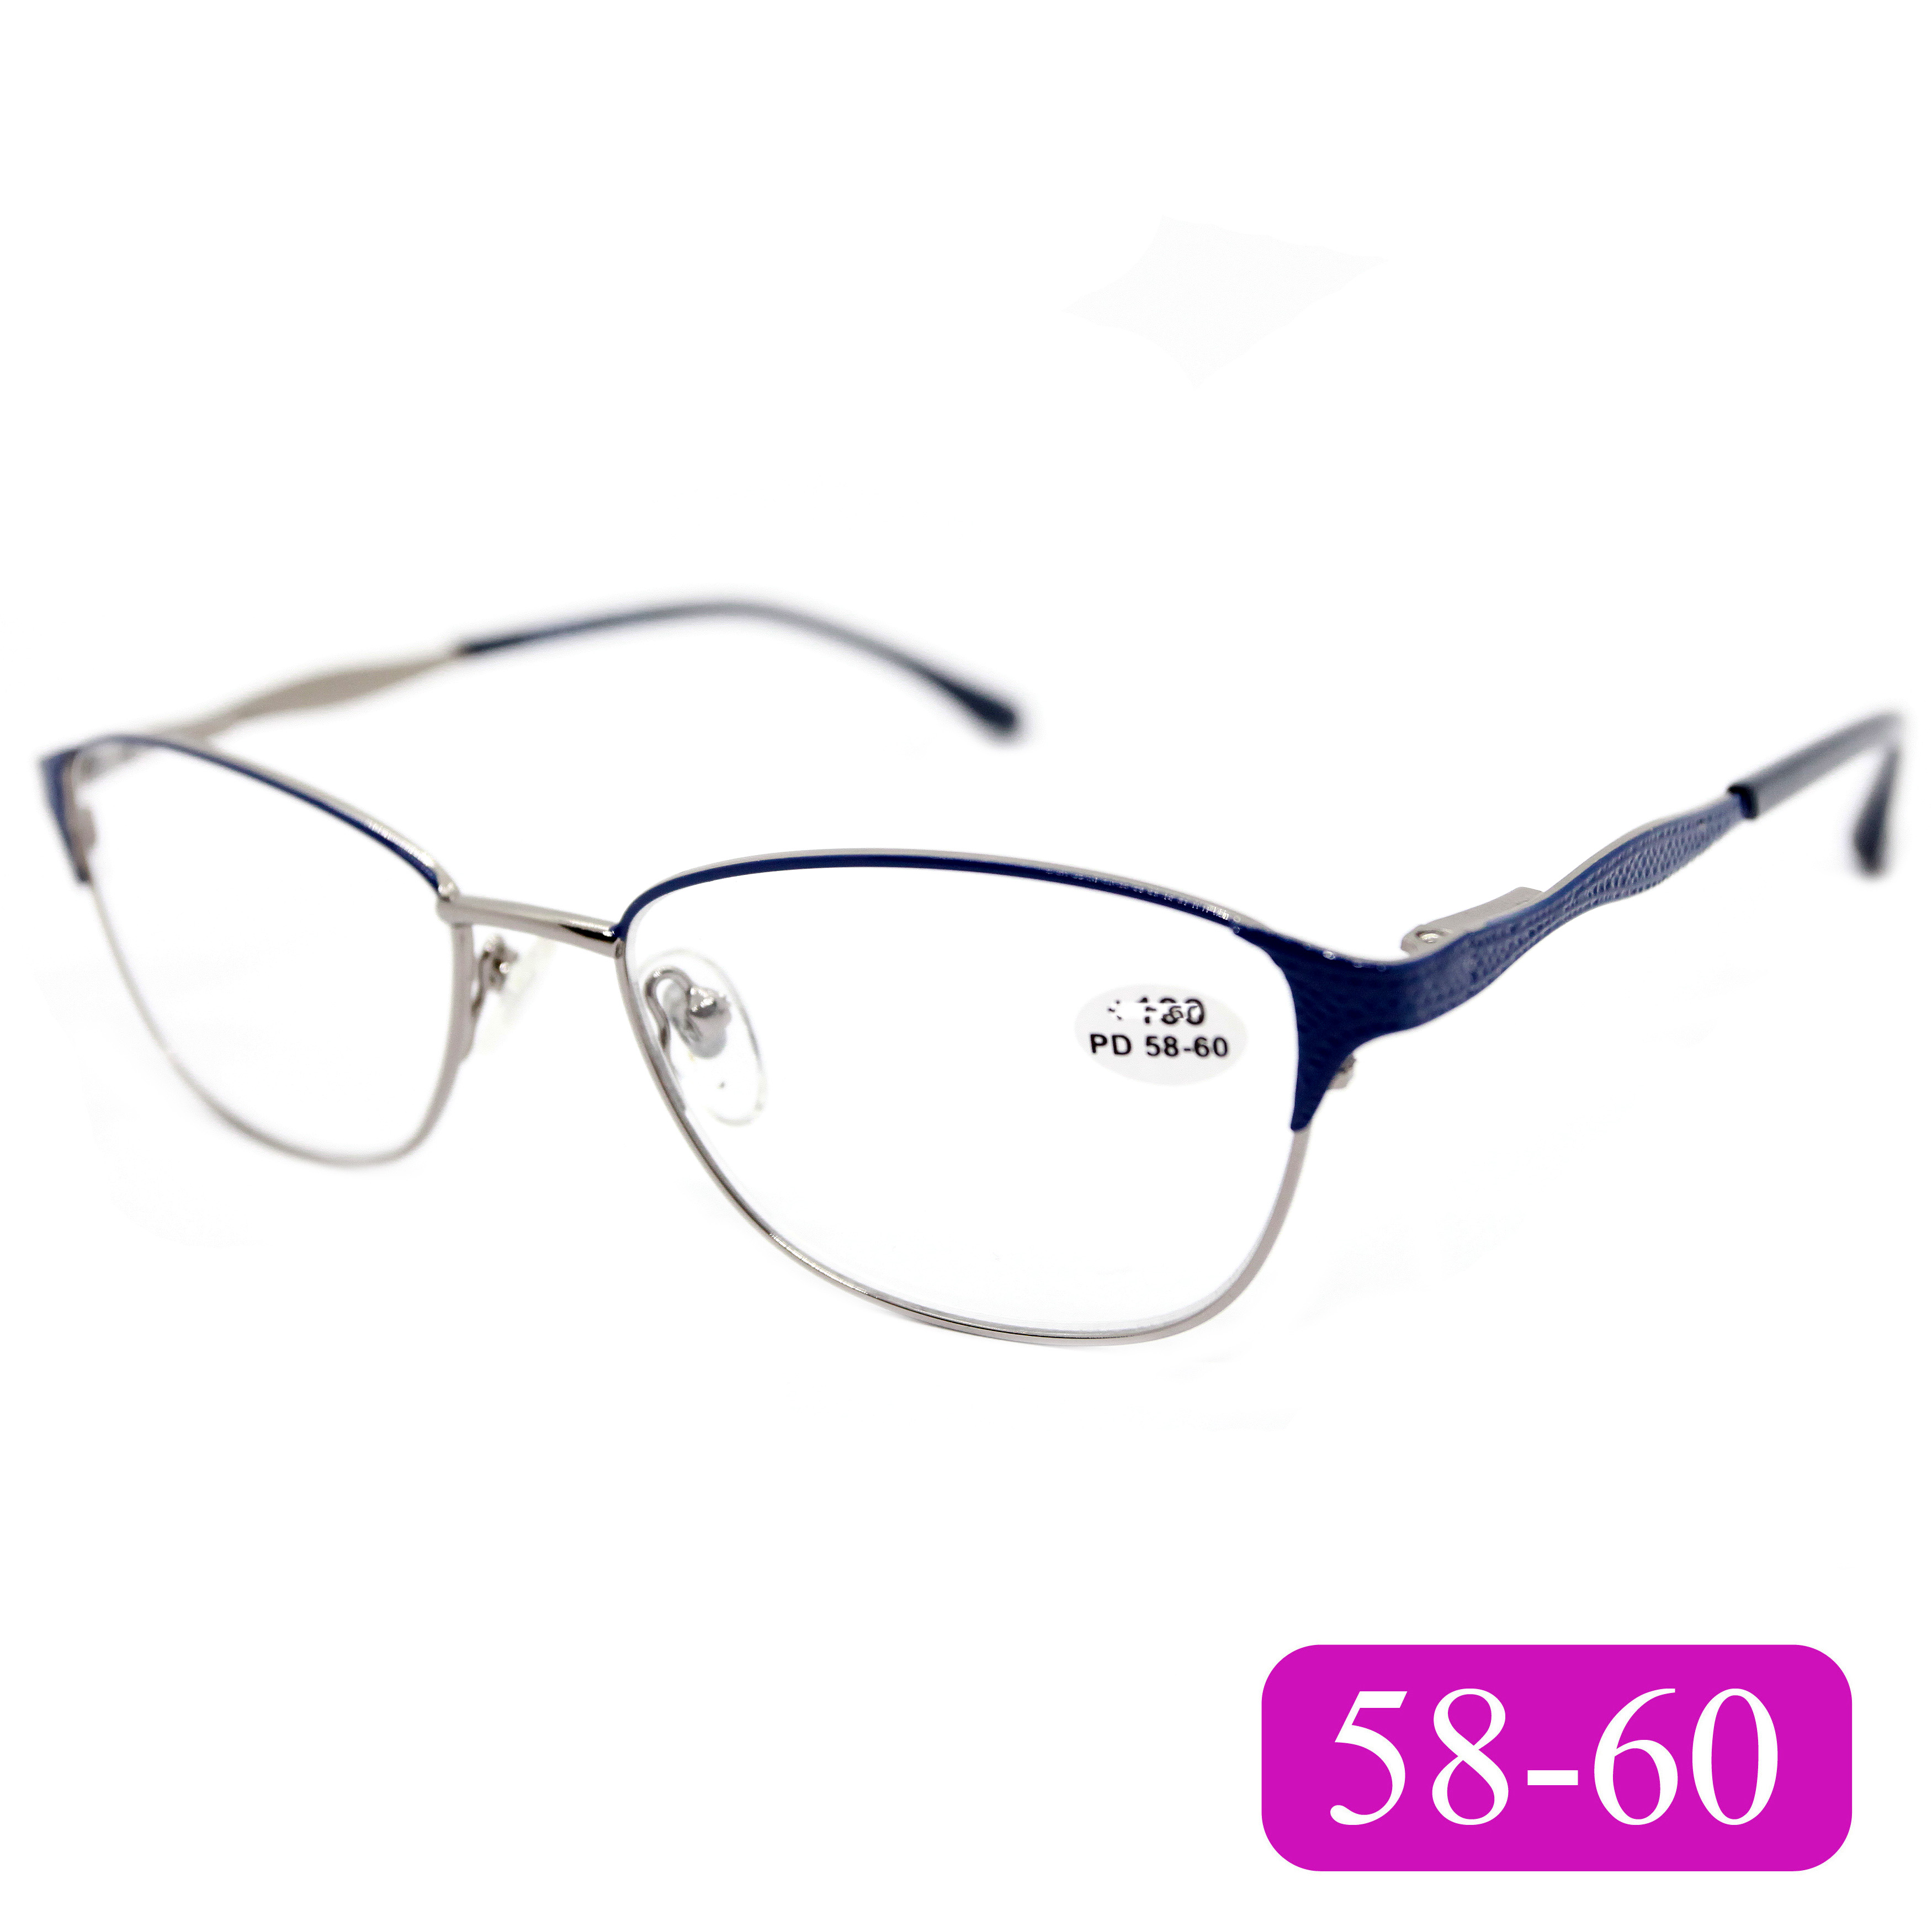 Корригирующие очки для чтения RALH 0715 +1,25, без футляра, цвет синий, РЦ 58-60